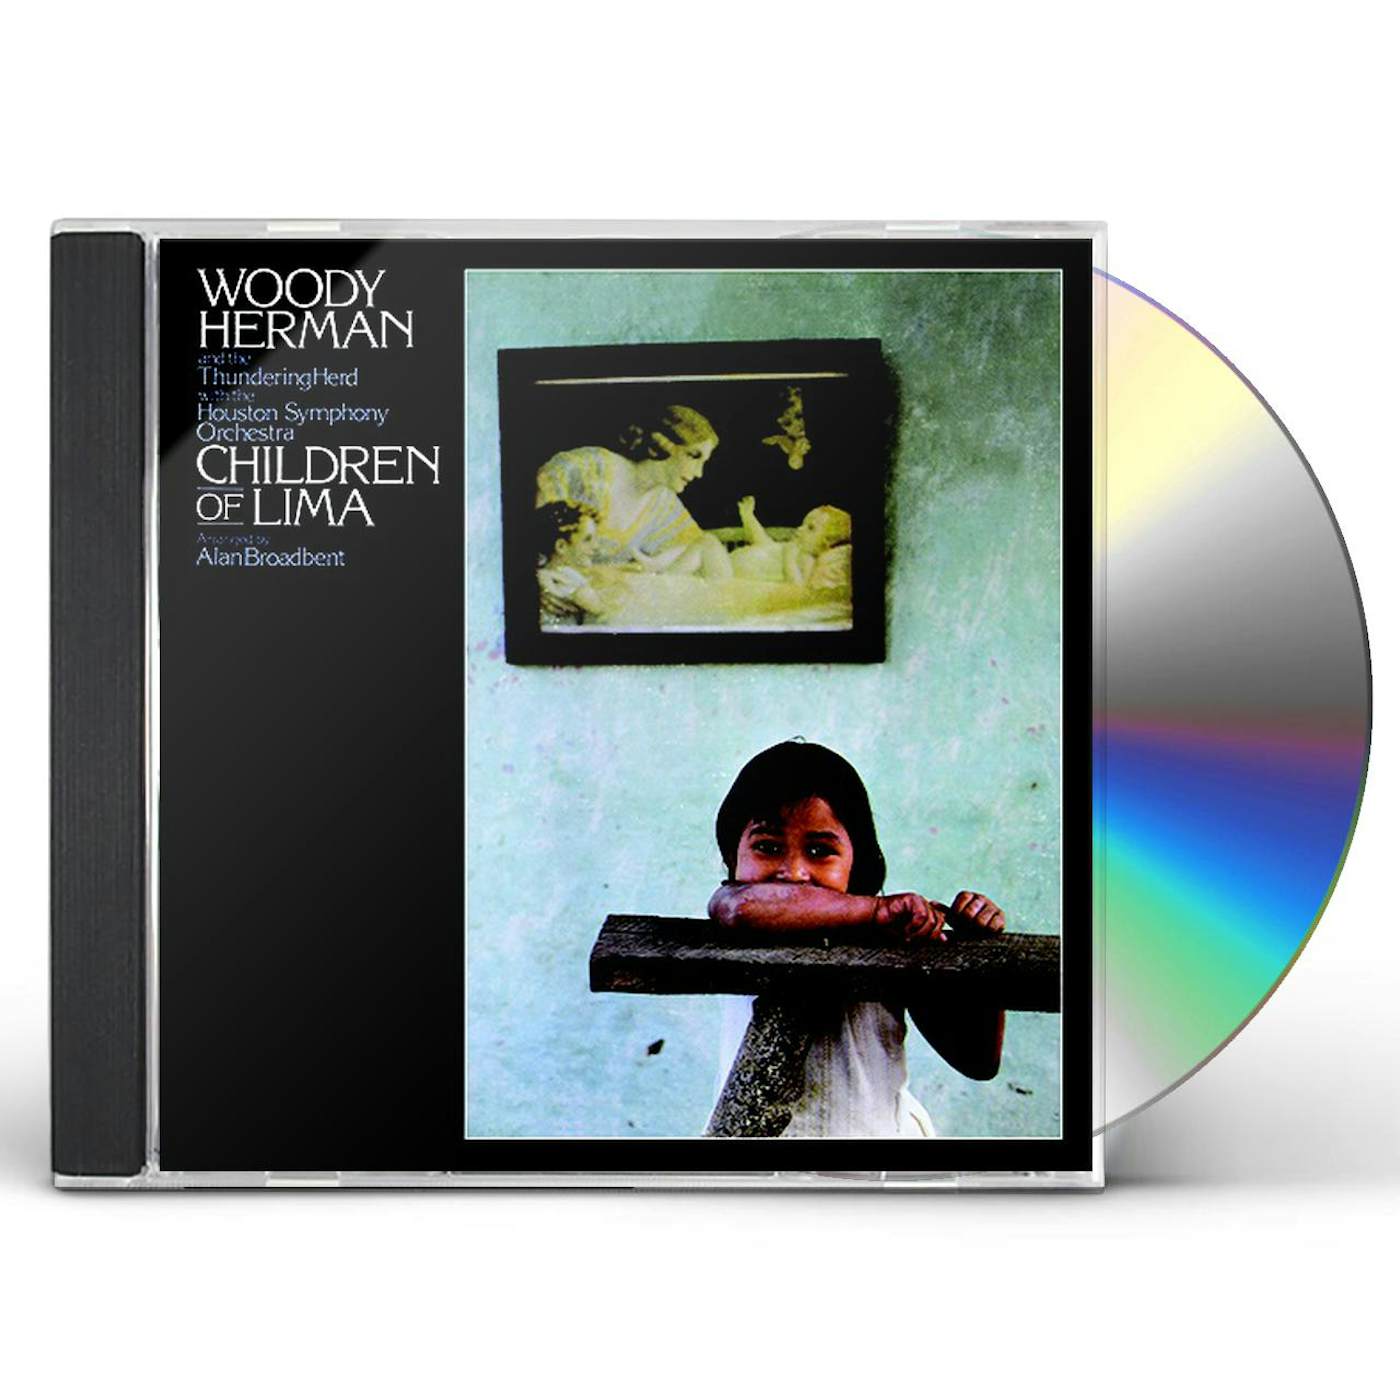 Woody Herman CHILDREN OF LIMA CD